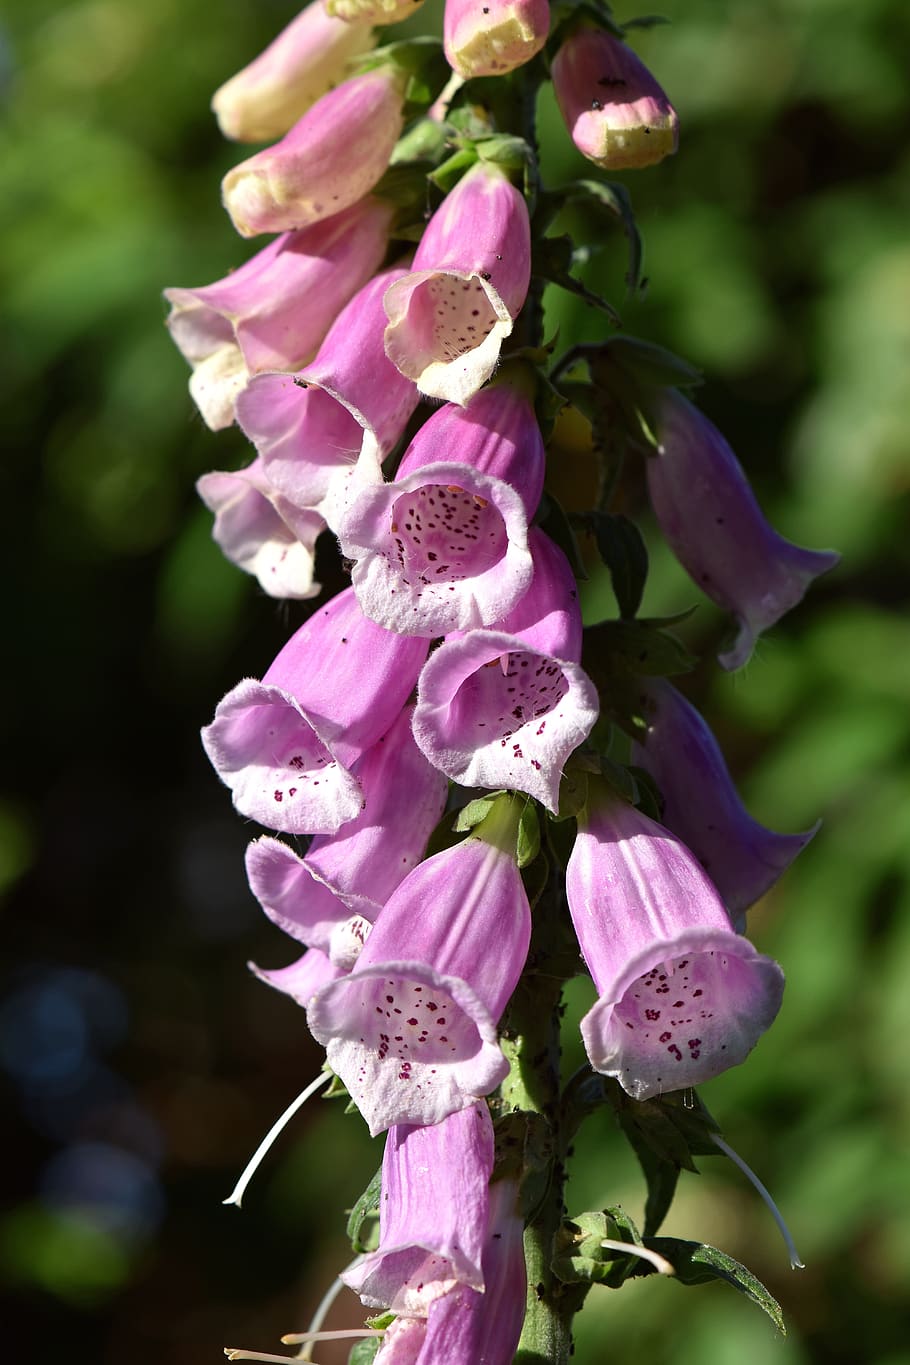 Fotos invernadero de flores de campana libres de regalías | Pxfuel